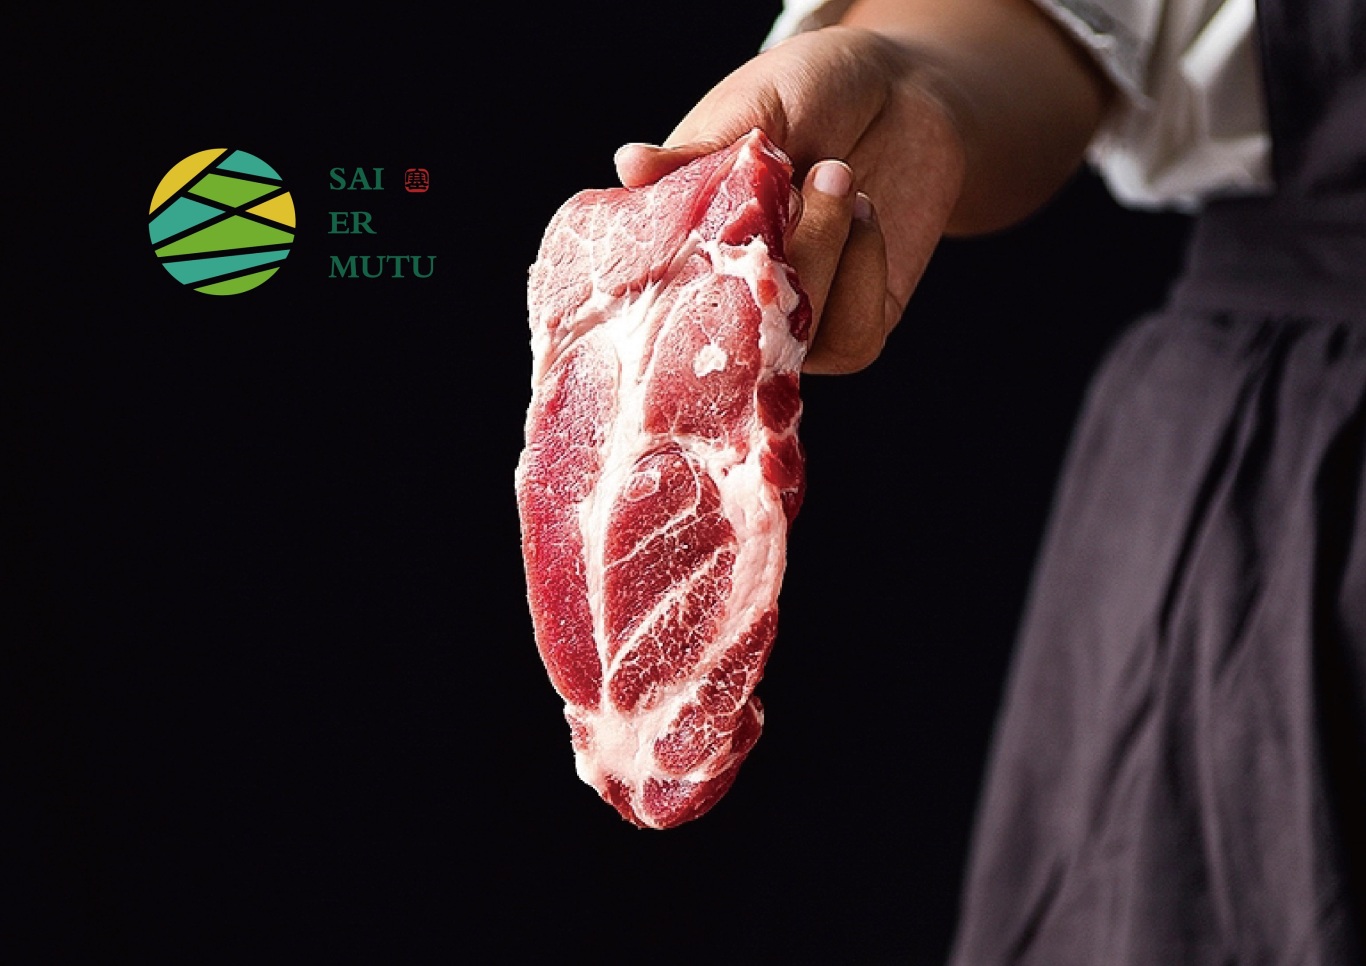 塞爾木圖——食品/飲品 肉類食品/制品 生鮮 羊肉 牛肉LOGO設計圖0